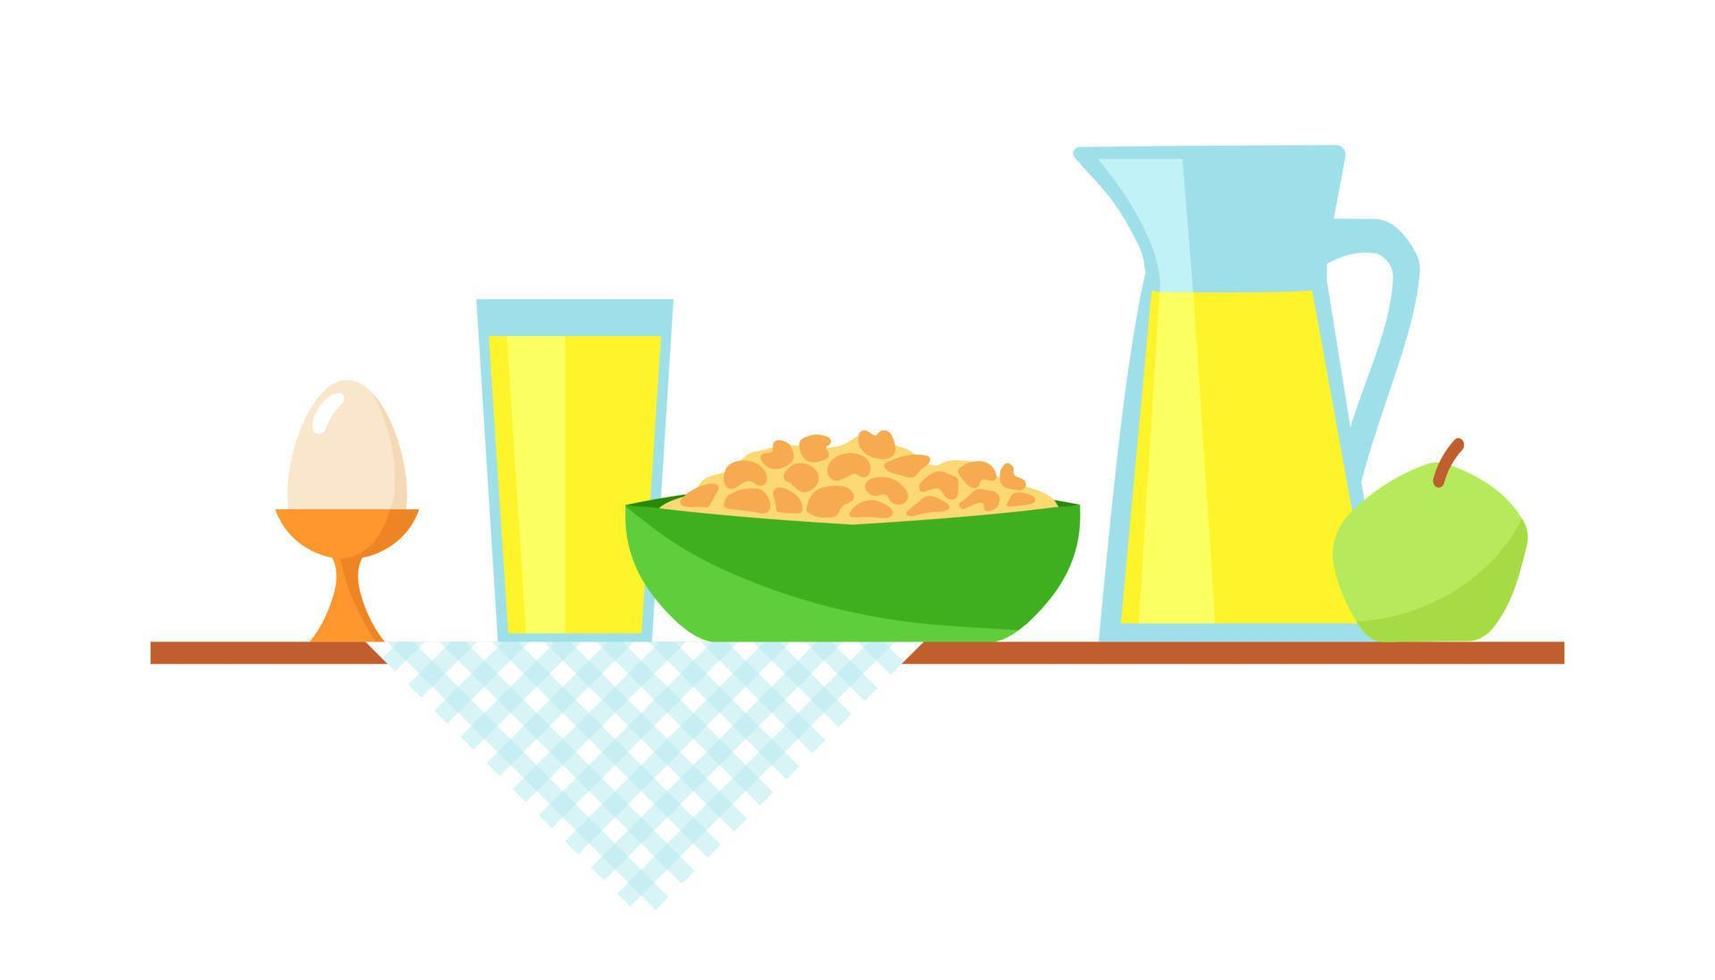 ilustração plana de vetor de pequeno-almoço saudável. conceito de ilustração de design para a hora do café da manhã. muesli, copo de suco, maçã e ovo servido na mesa.